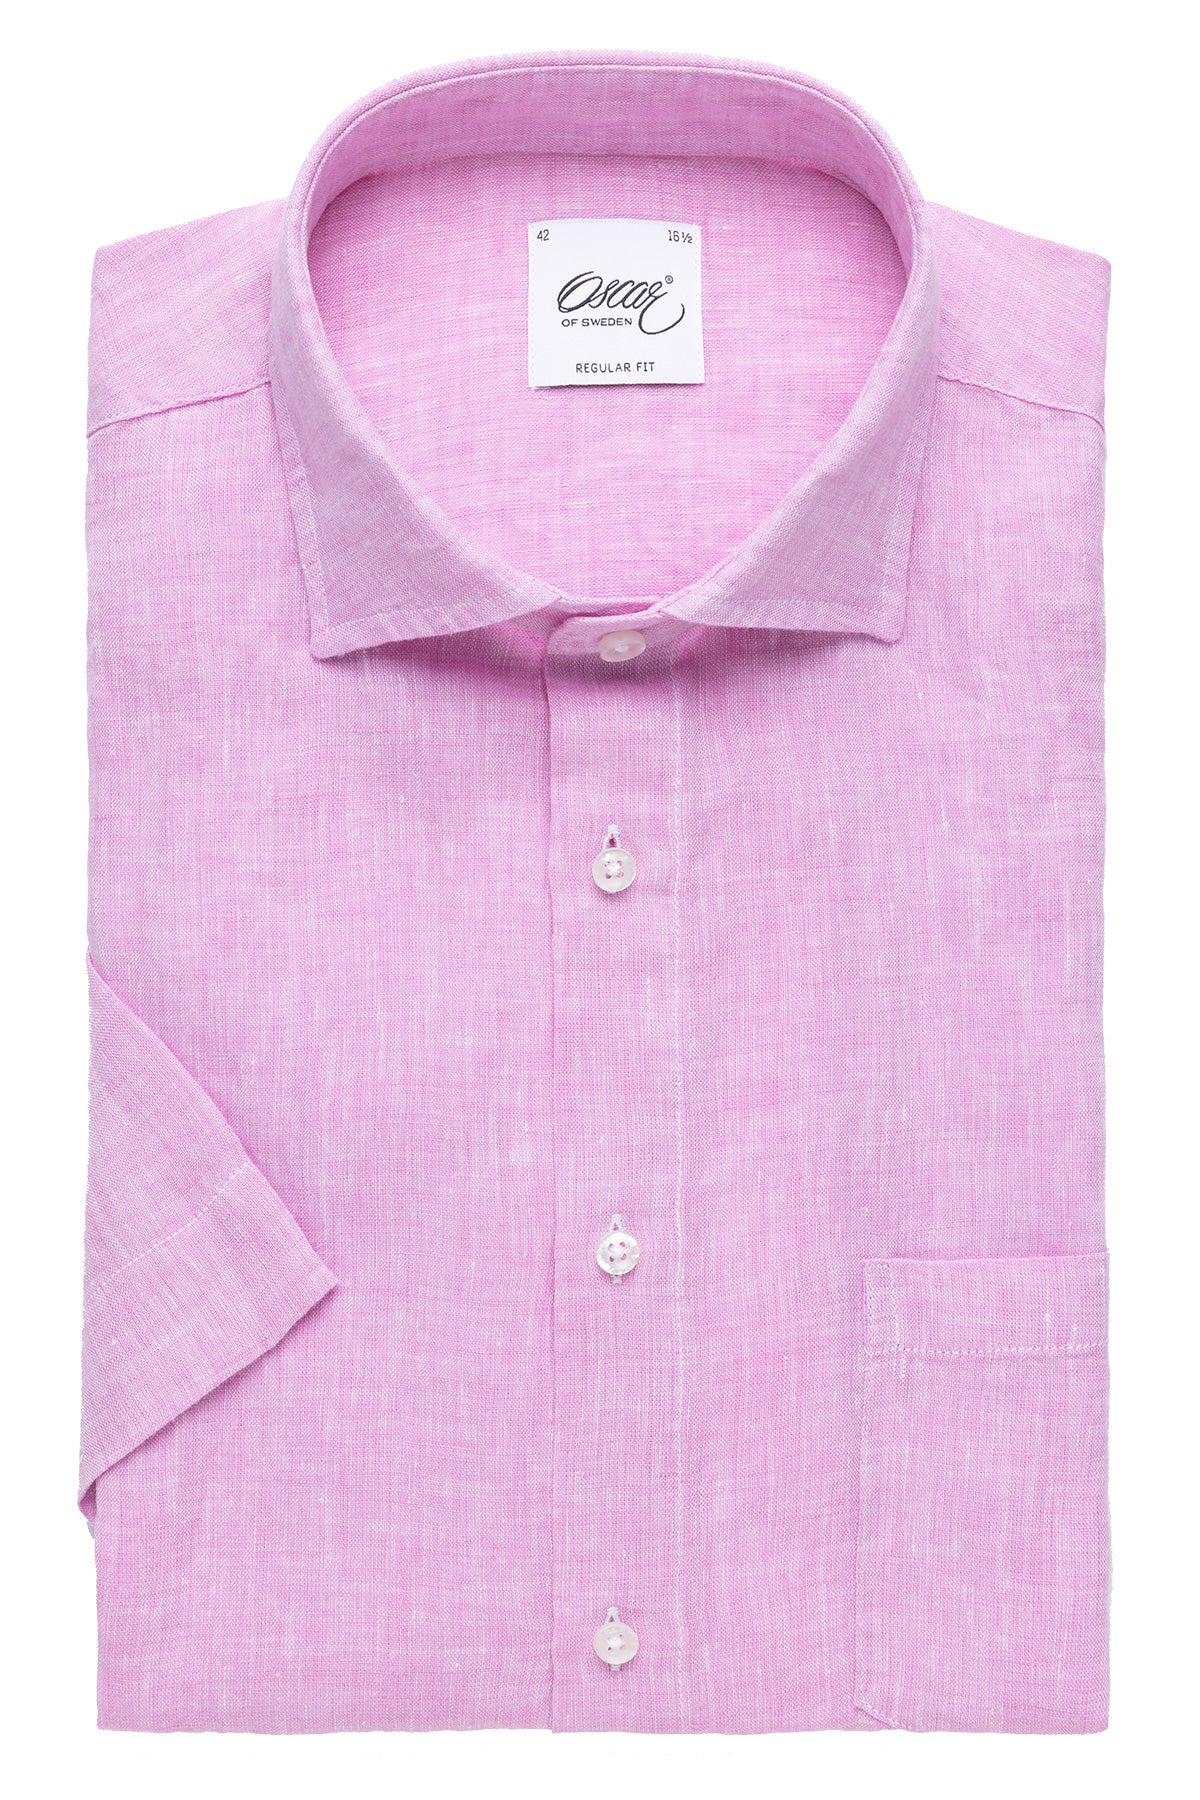 Pink short sleeve regular fit linen shirt